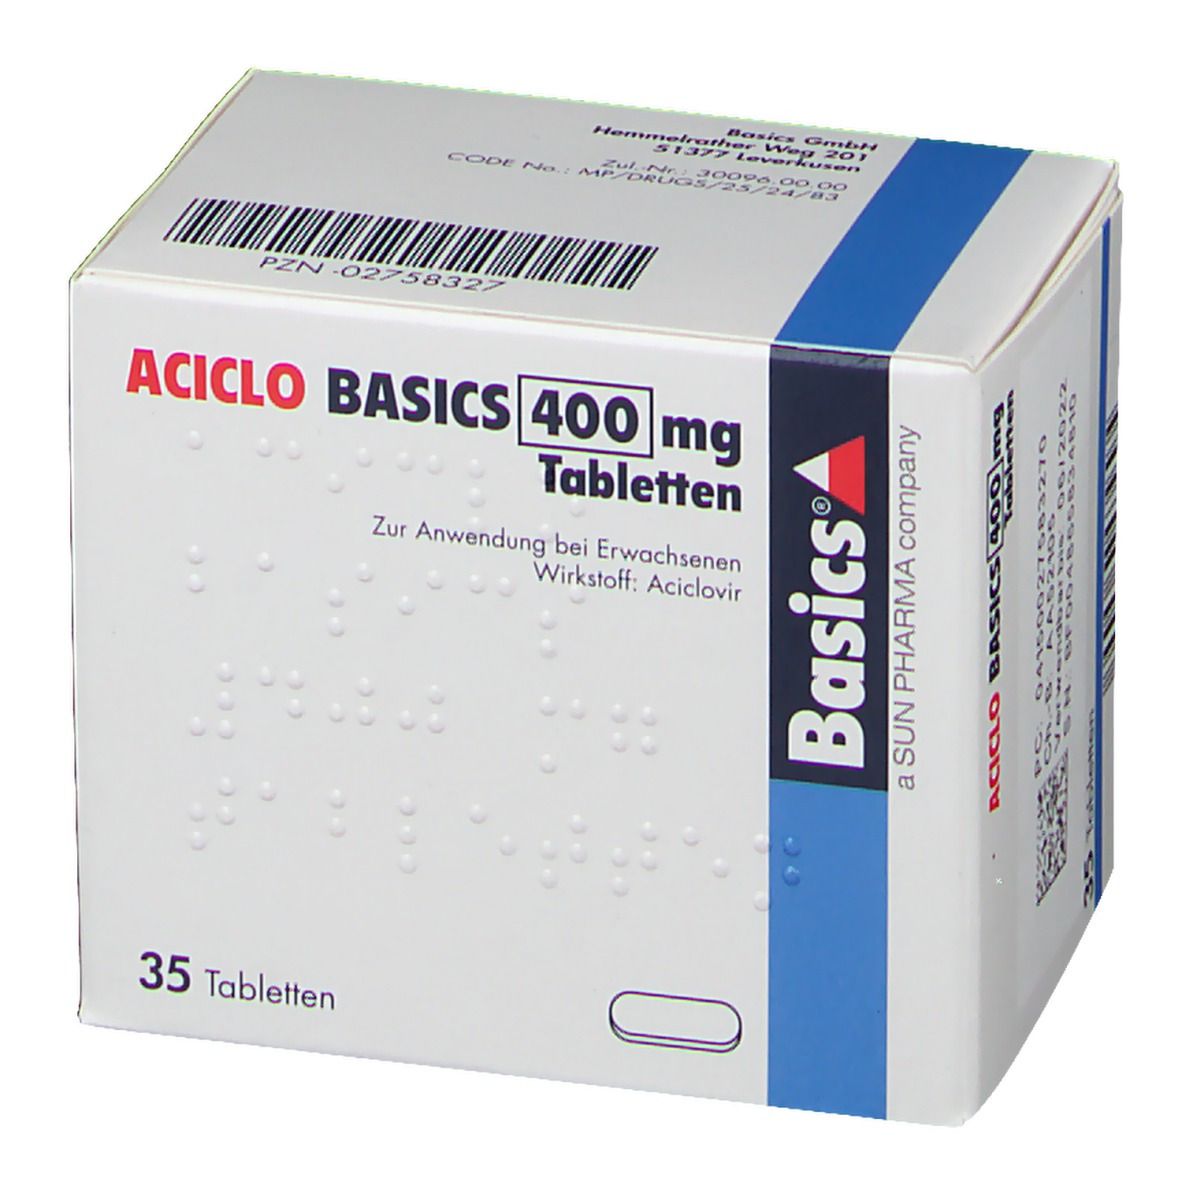 ACICLO BASICS 400 mg